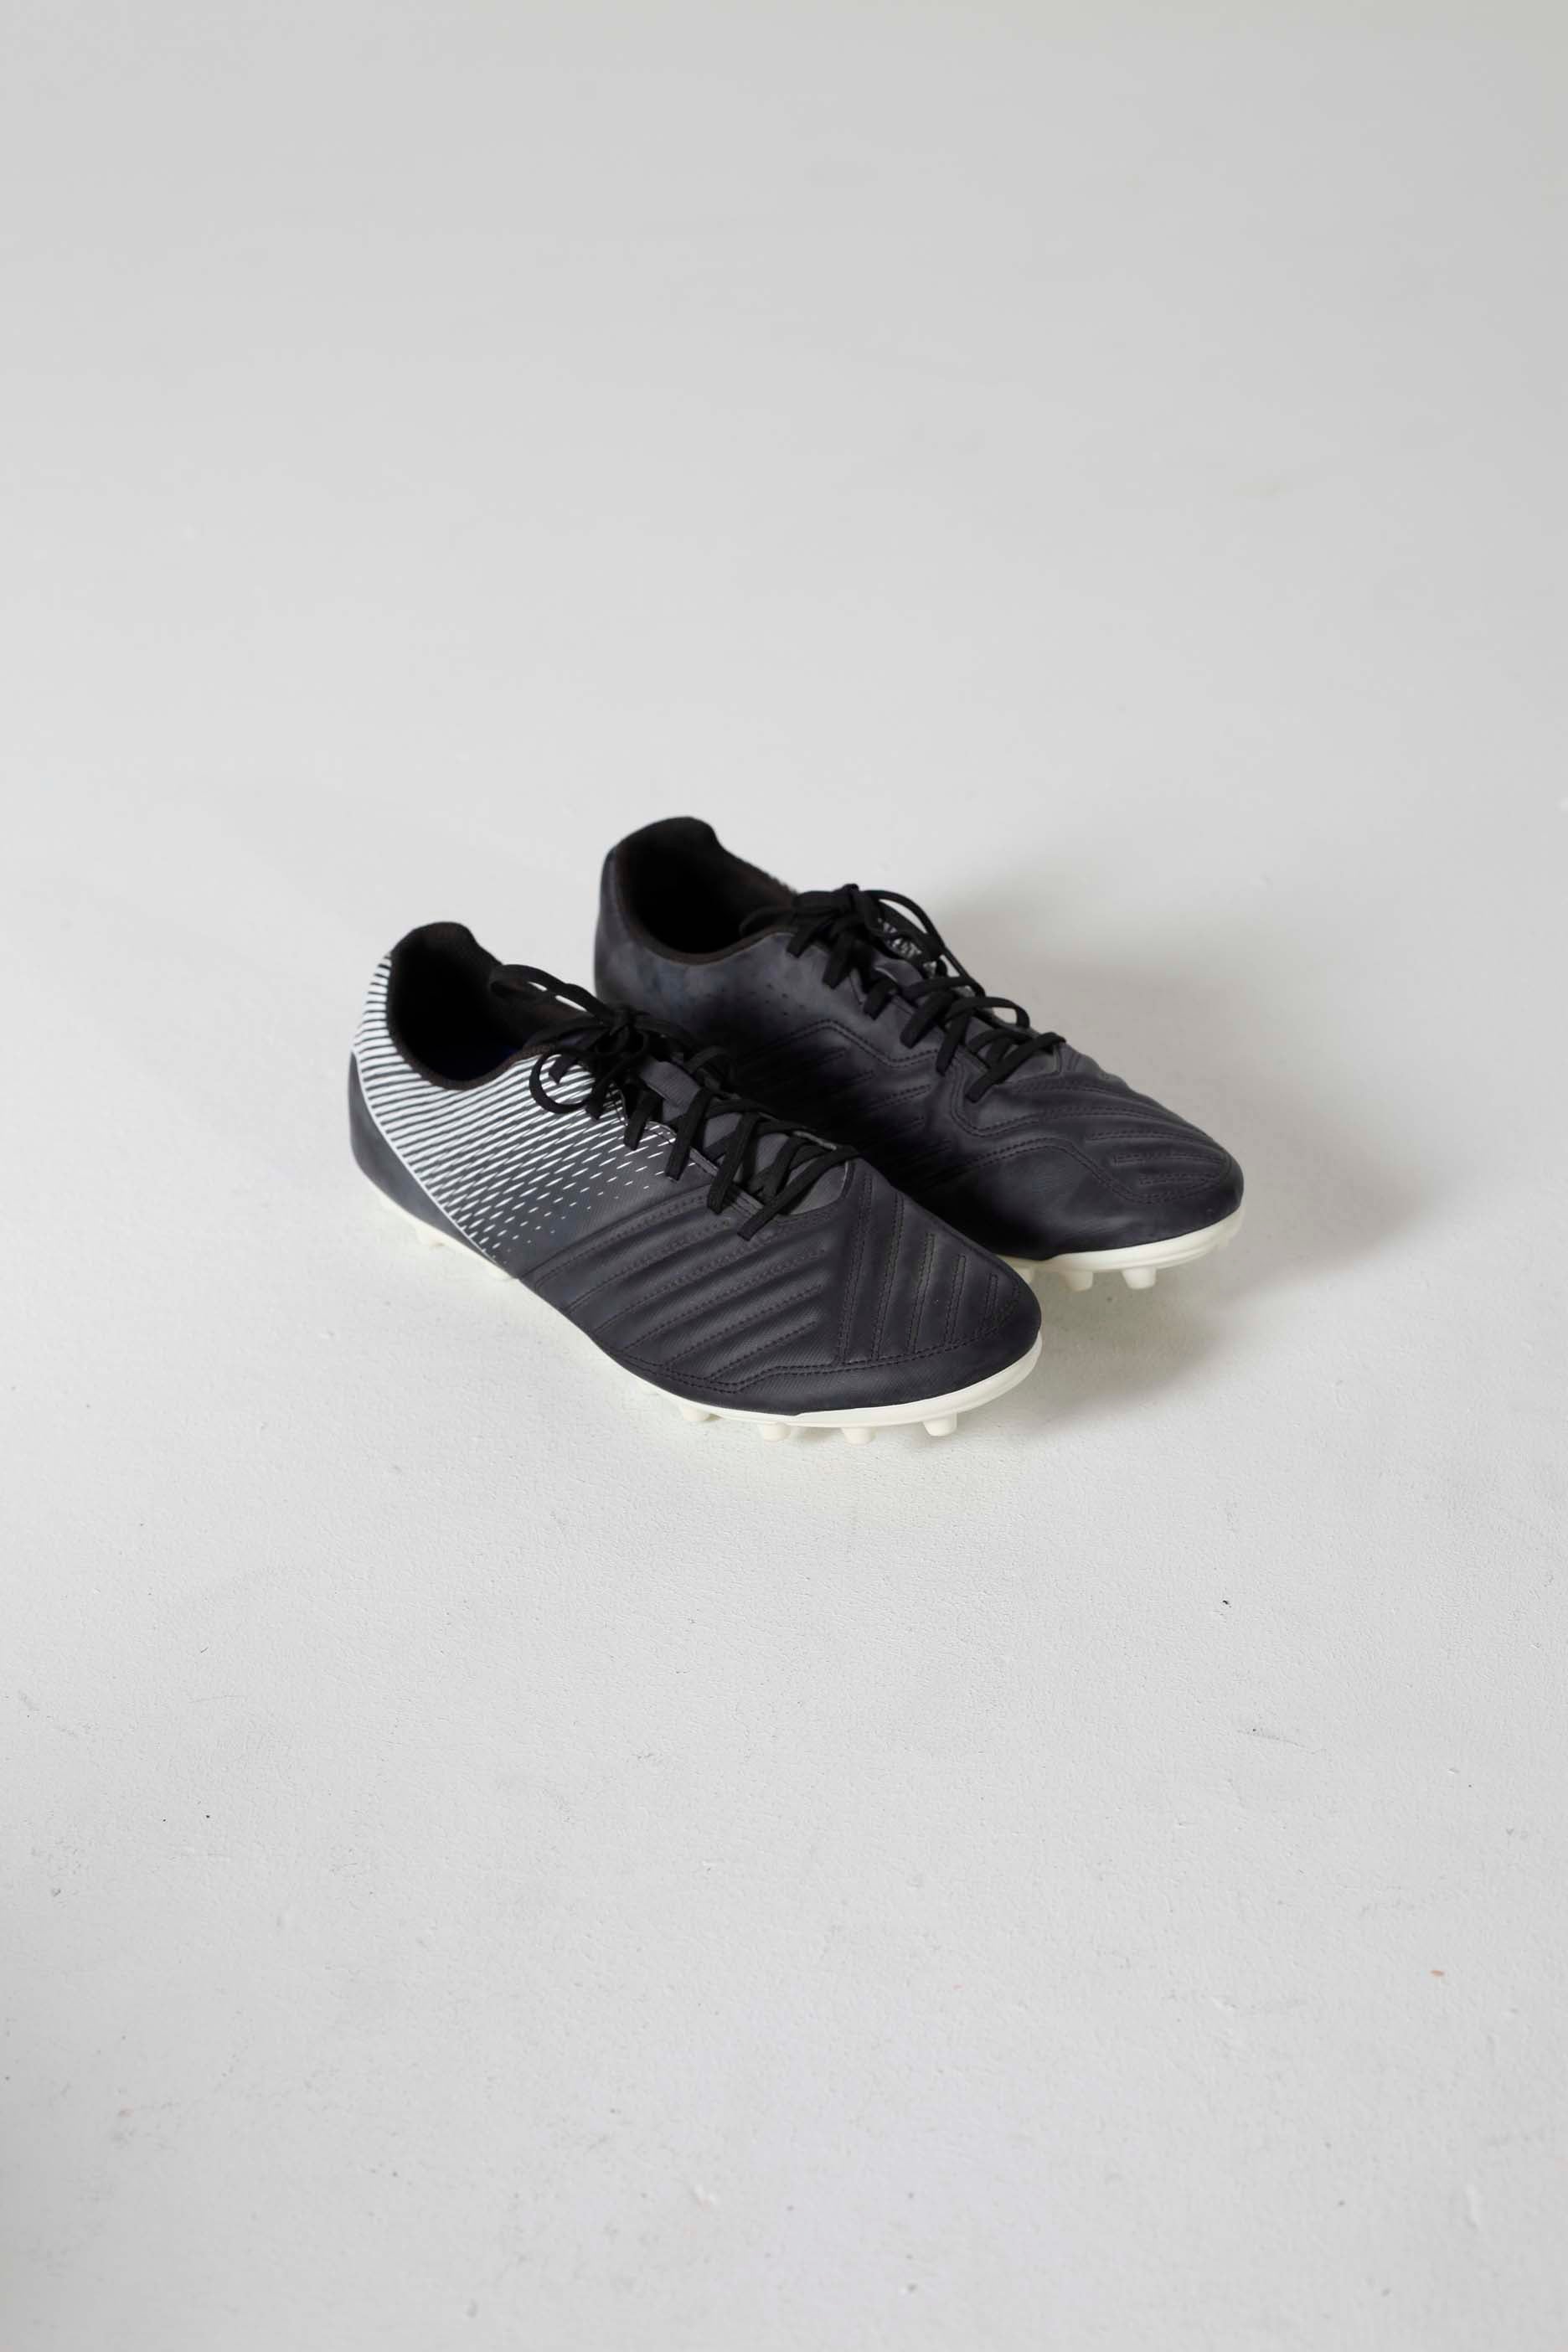 Mens Football Boots Sneakers (Eu46)